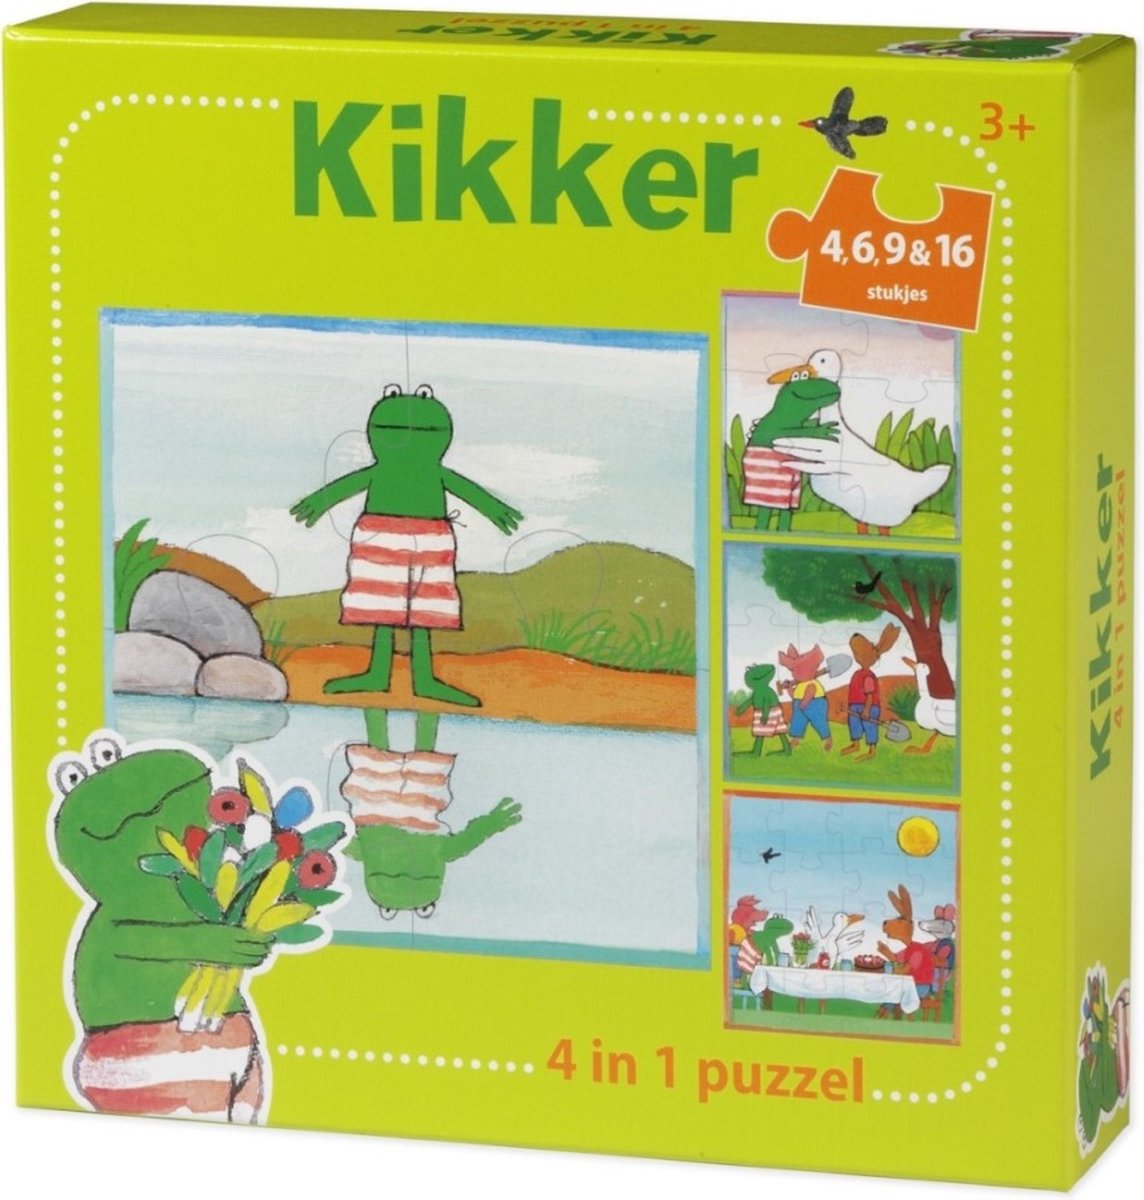 Kikker puzzel 4 in 1 educatief peuter speelgoed - kinderpuzzel 4x6x9x16 stukjes leren puzzelen - cadeautip puzzel 3 jaar en ouder - Bambolino Toys - Bambolino